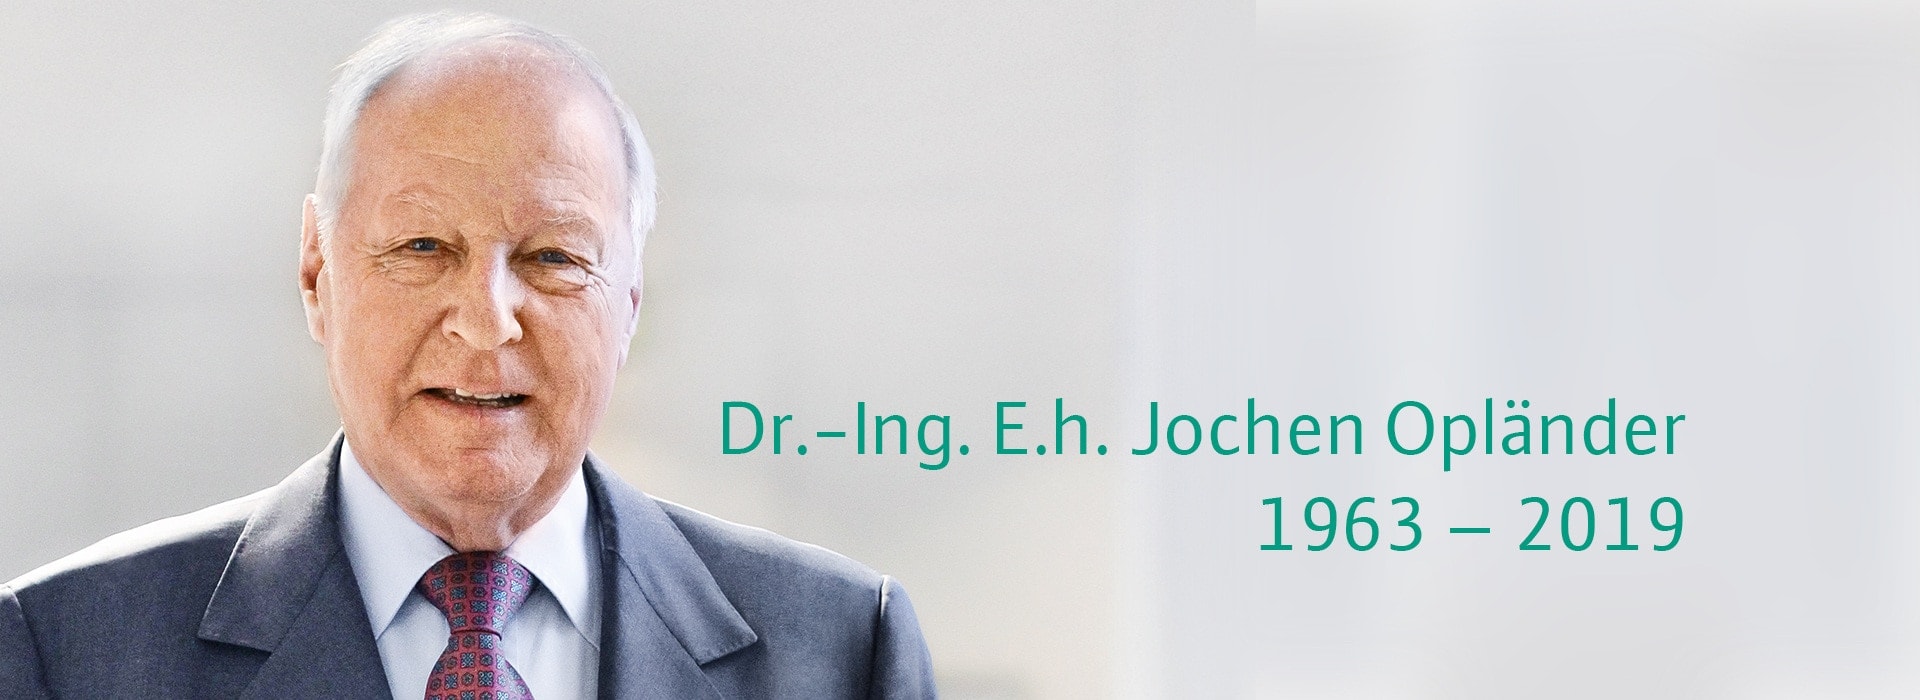  Jochen Opländer荣誉博士 